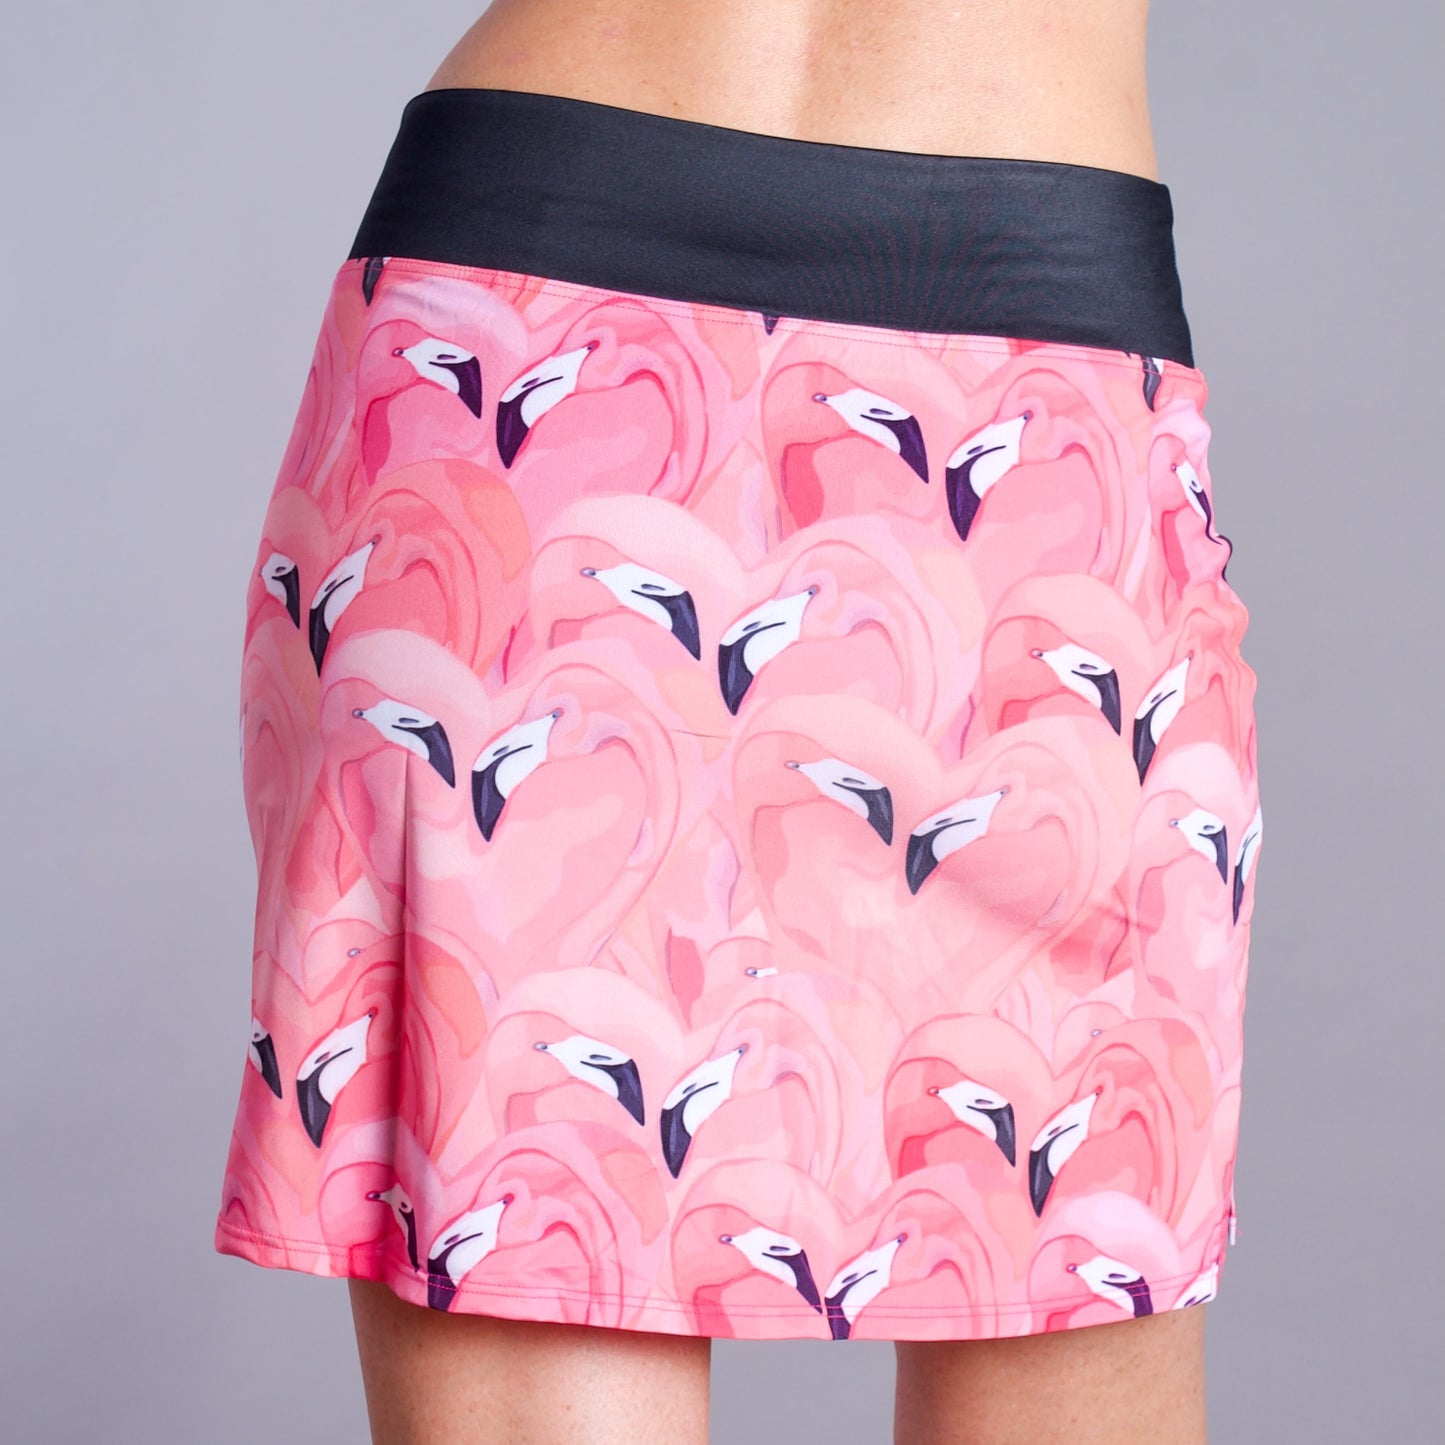 pink flamingo skort for women